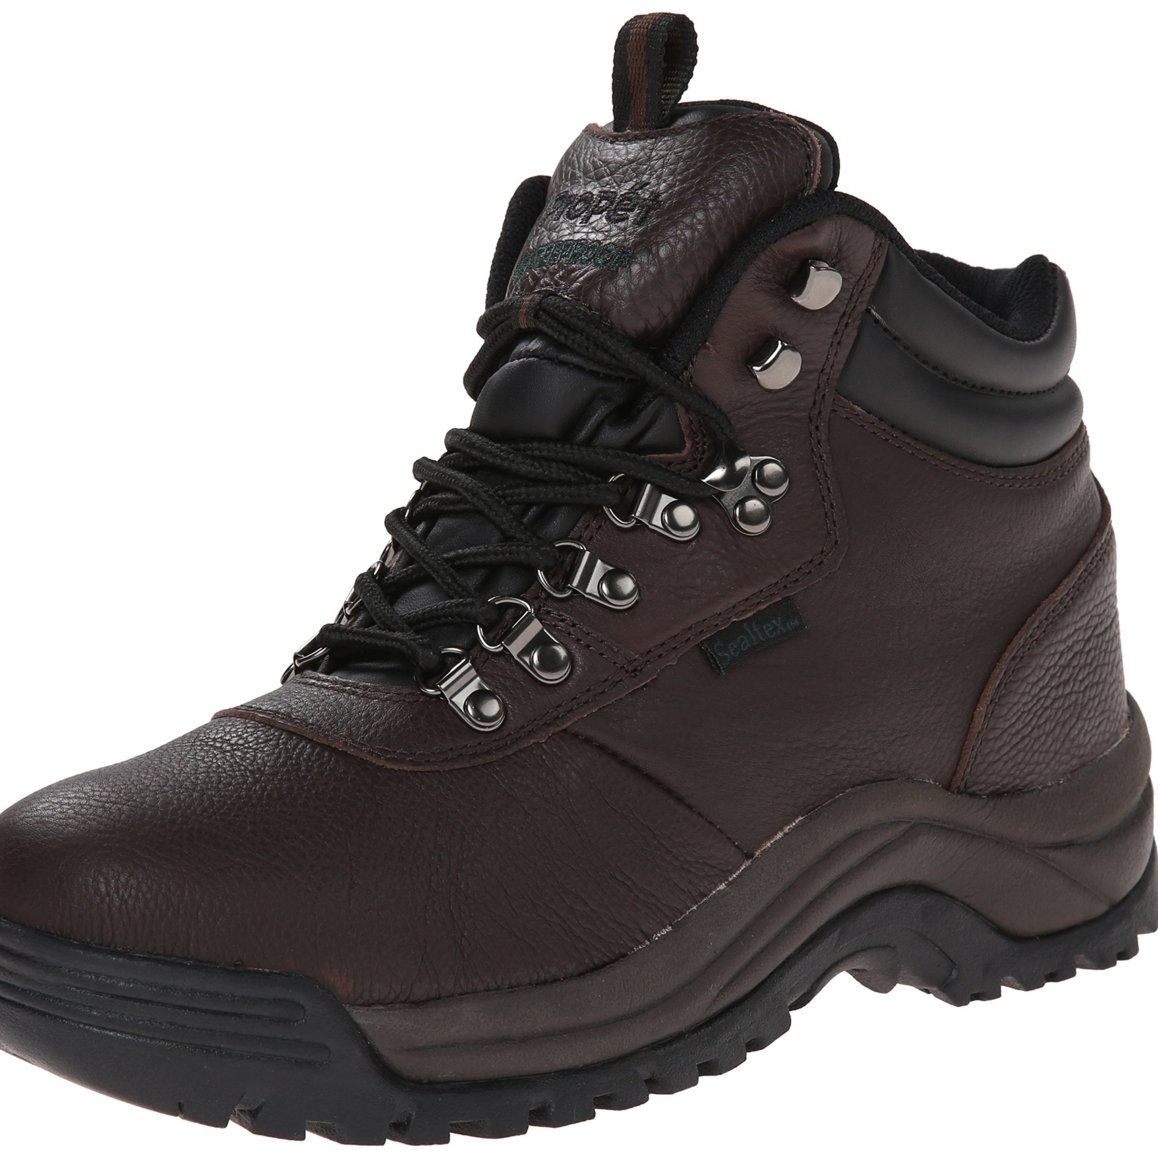 Propet Men's Cliff Walker Hiking Boot Bronco Brown - M3188BRO - BRONCO BROWN, 7.5-D